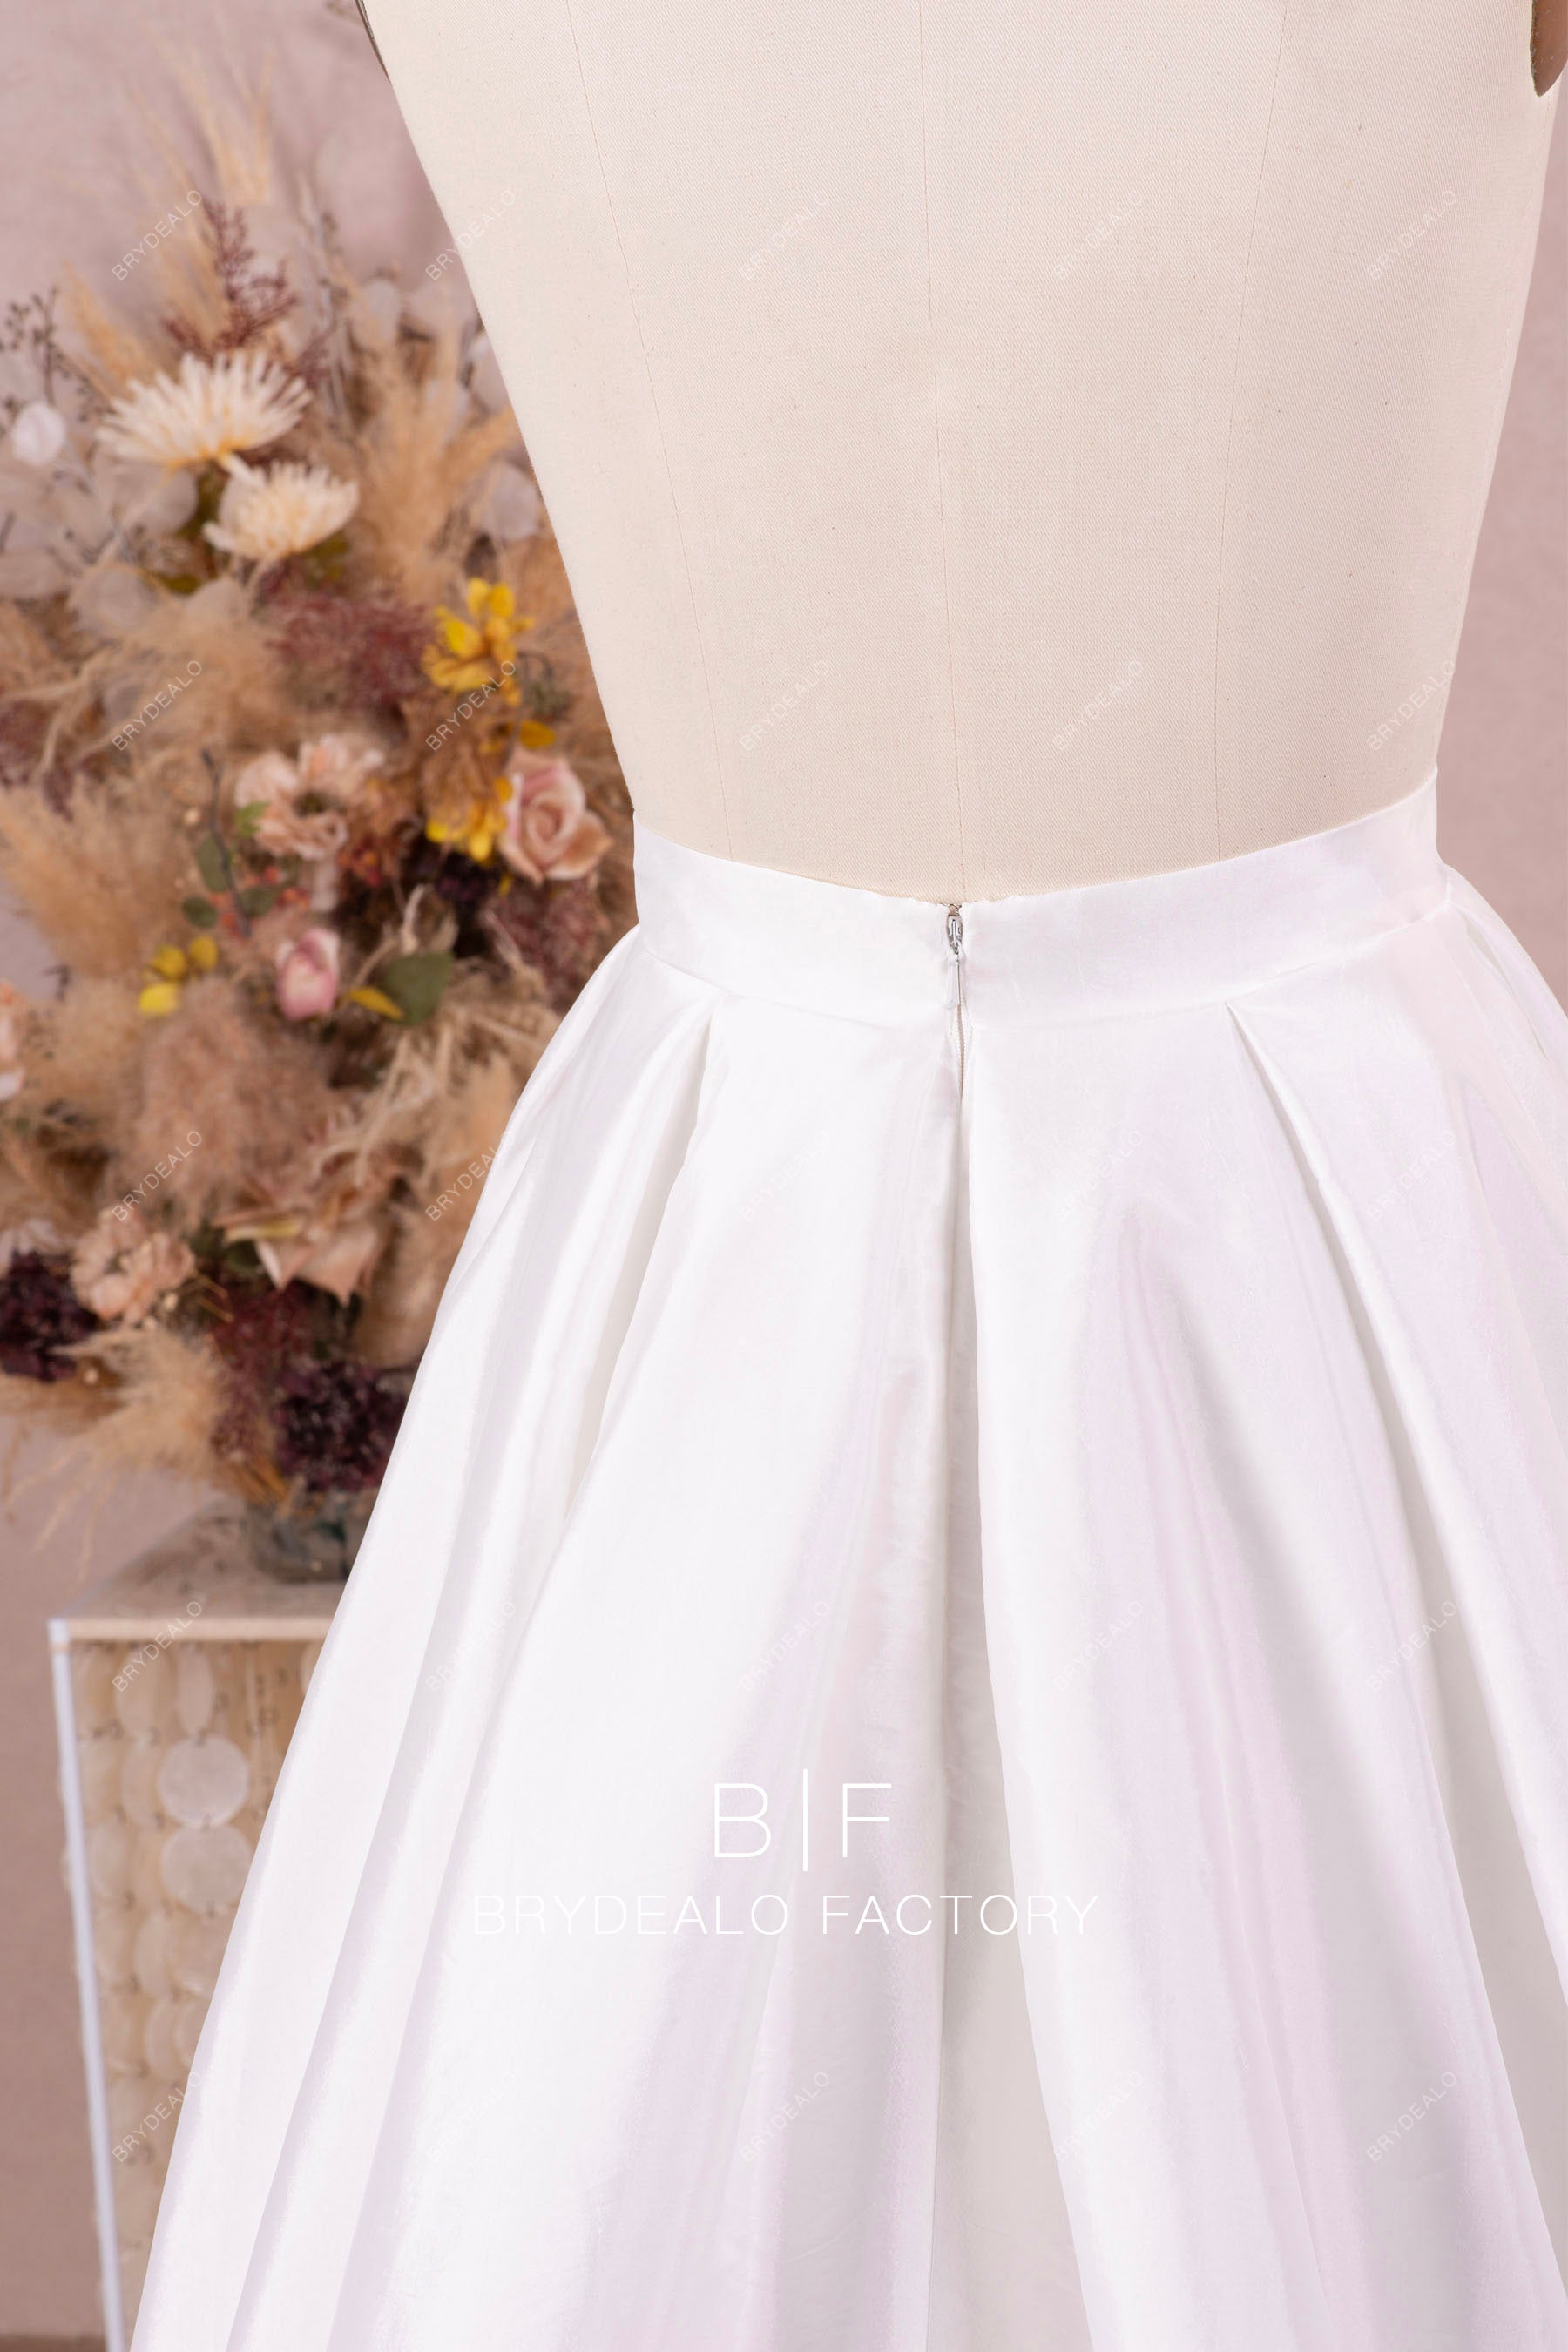 zipper closure bridal skirt